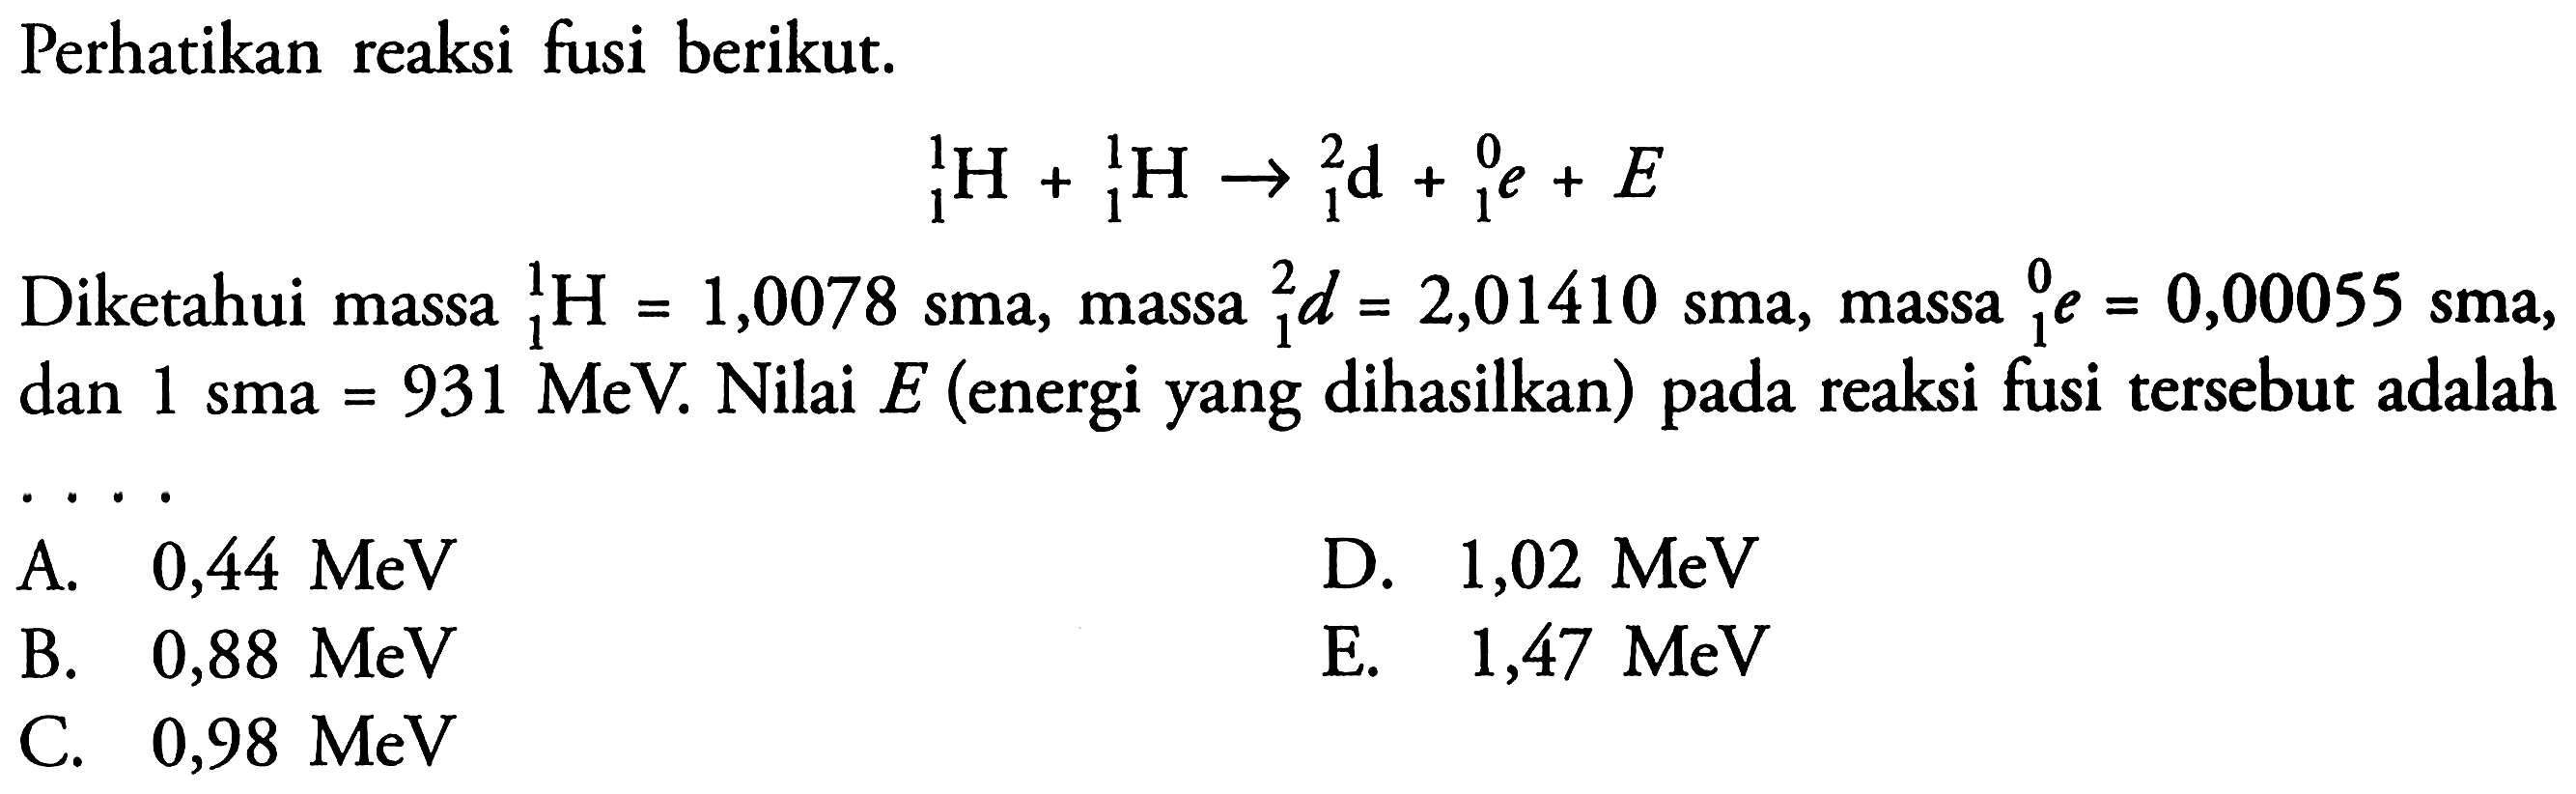 Perhatikan reaksi fusi berikut.1 H 1+ 1 H 1 <=> 1 d 2 + 1 e 0 + EDiketahui massa 1 H 1 =1,0078 sma, massa 1 d 2=2,01410 sma, massa 1 e 0 =0,00055 sma, dan 1 sma=931 MeV. Nilai E (energi yang dihasilkan) pada reaksi fusi tersebut adalah....